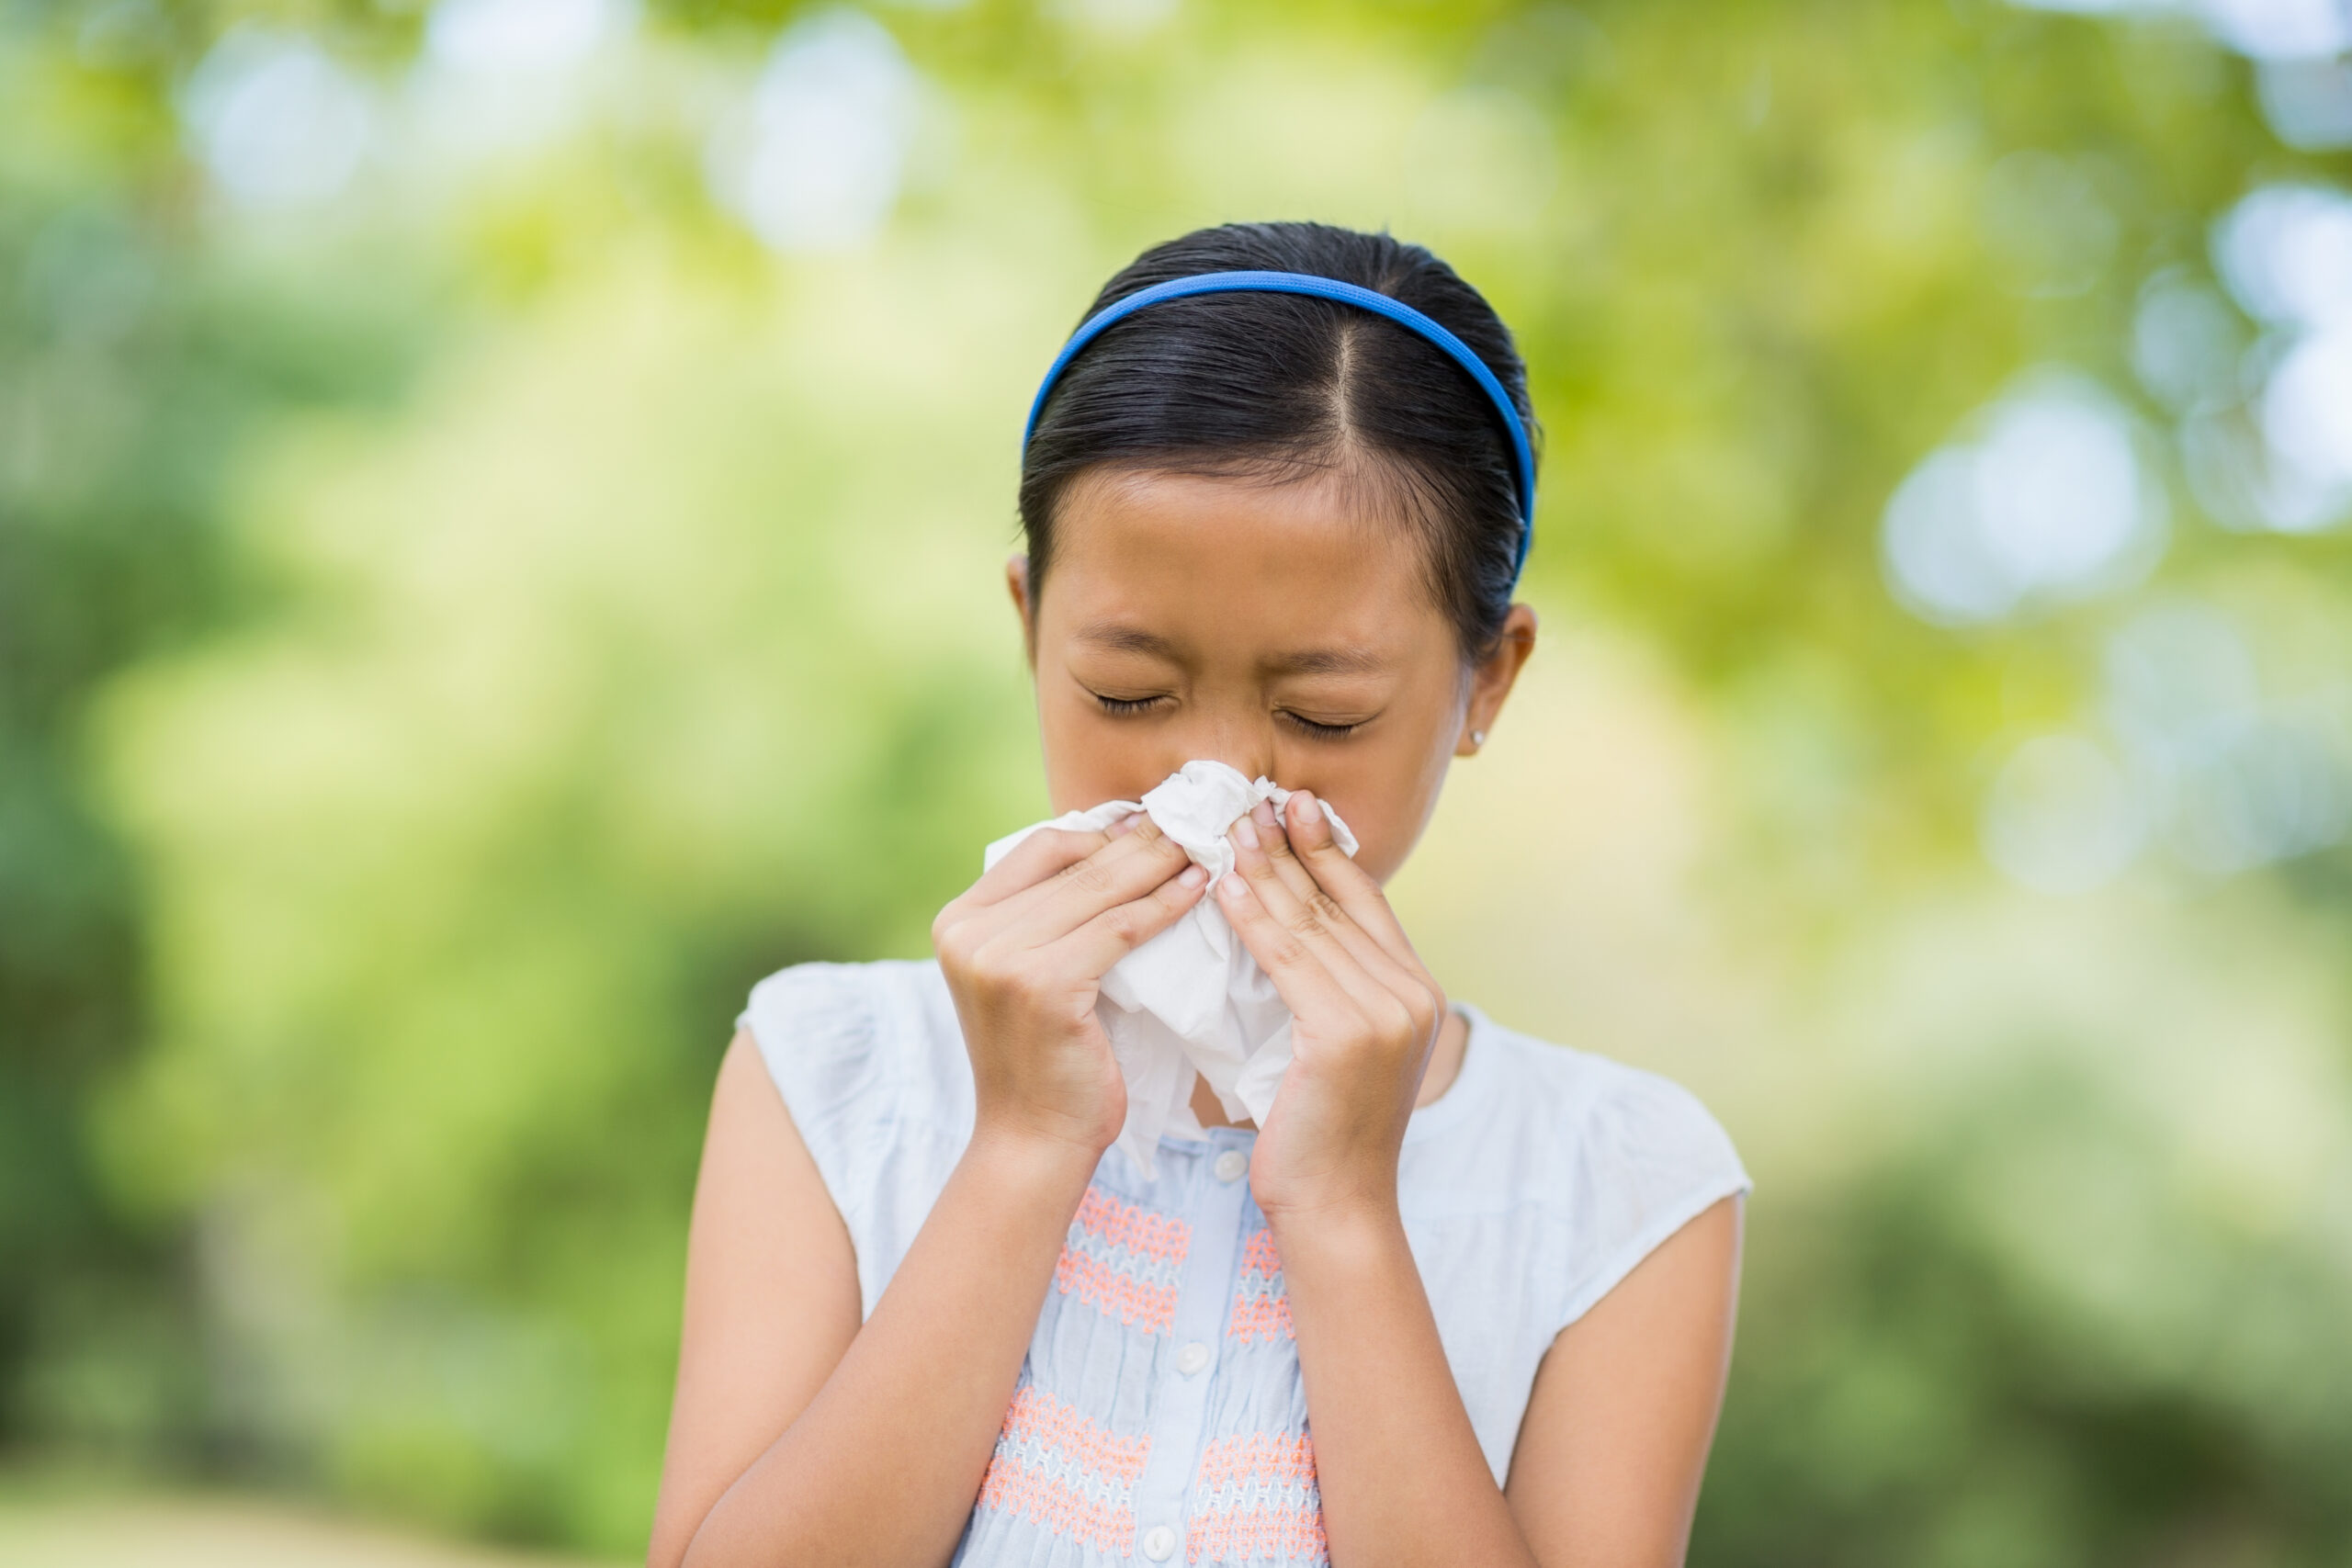 Pathogens cause new respiratory illness in China